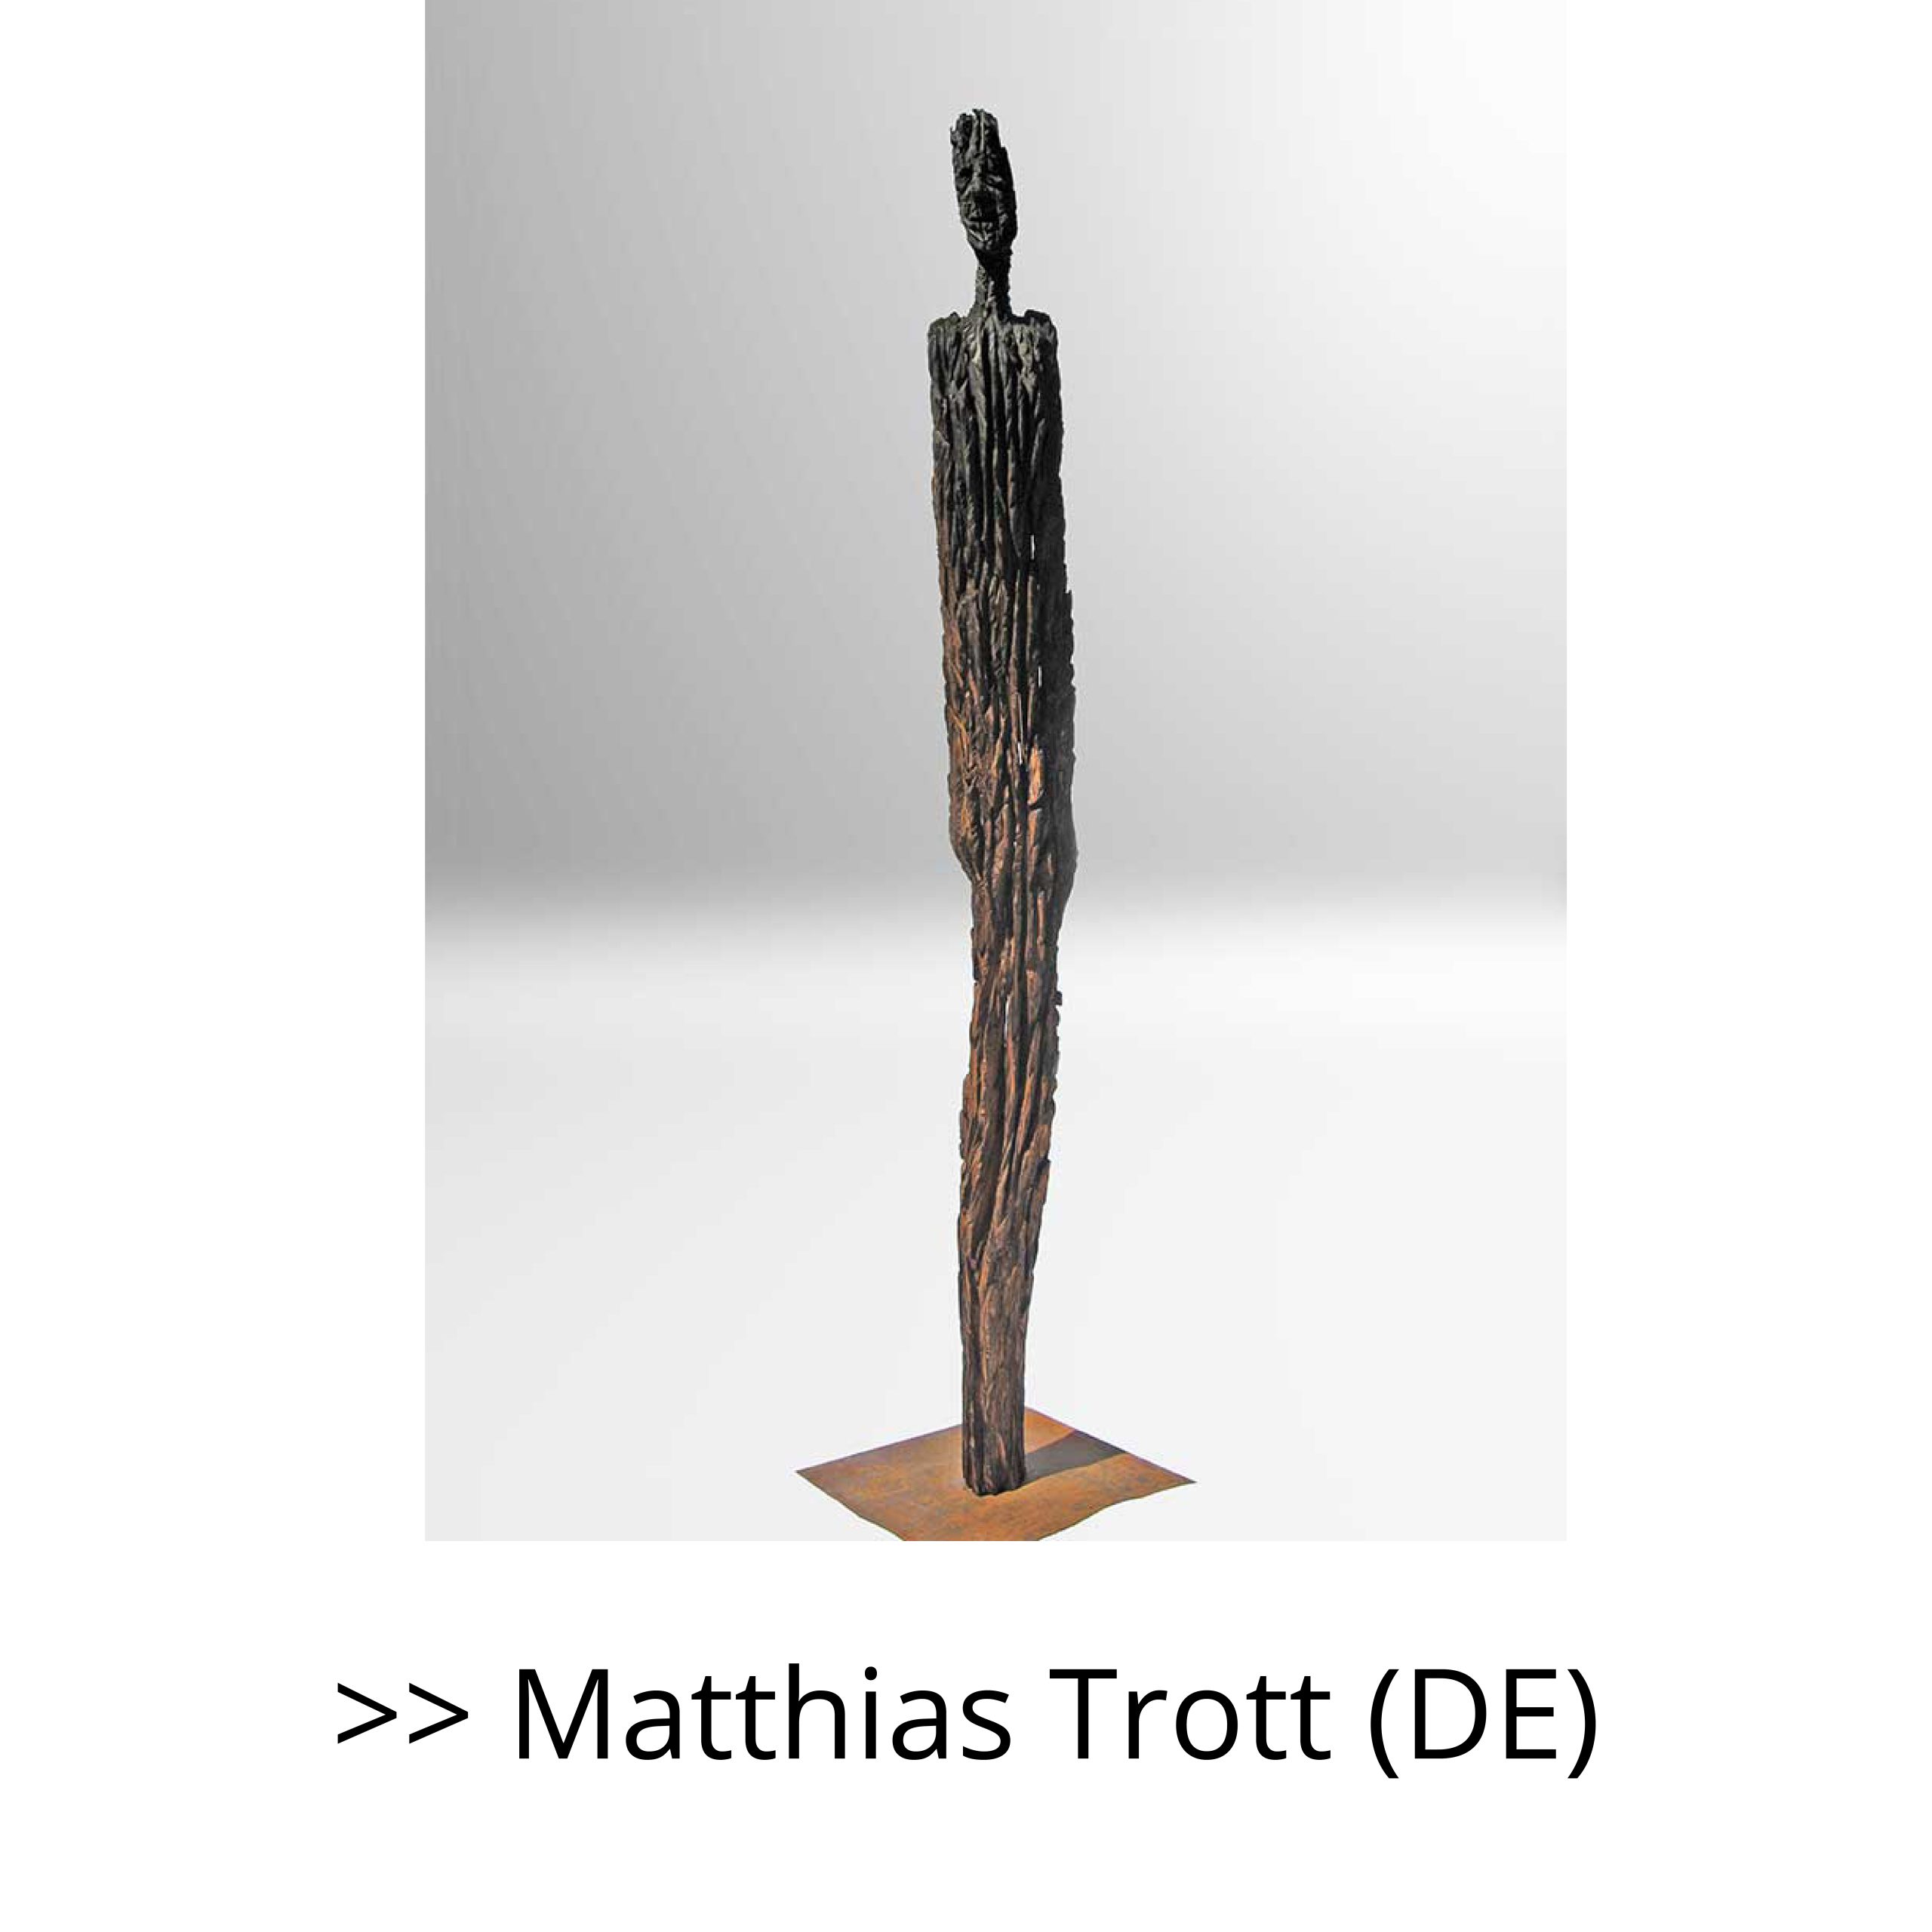 MATTHIAS TROTT (DE)